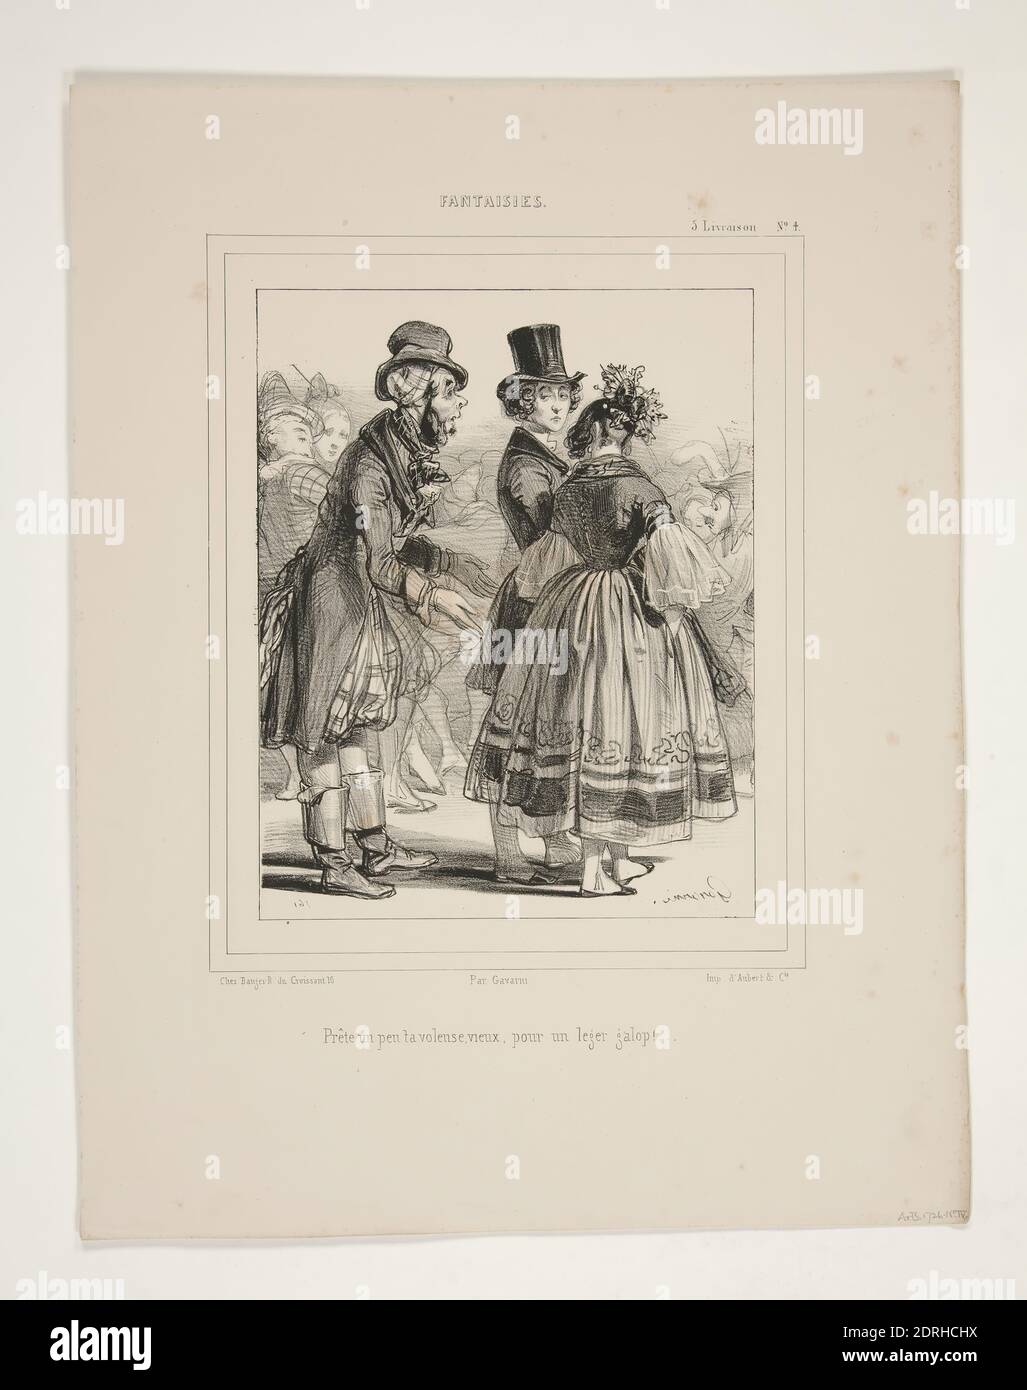 Artist: Paul Gavarni, French, 1804–1866, Prete un peu ta voleuse, vieux, pour un leger galop… (No. 4), Lithograph, French, 19th century, Works on Paper - Prints Stock Photo